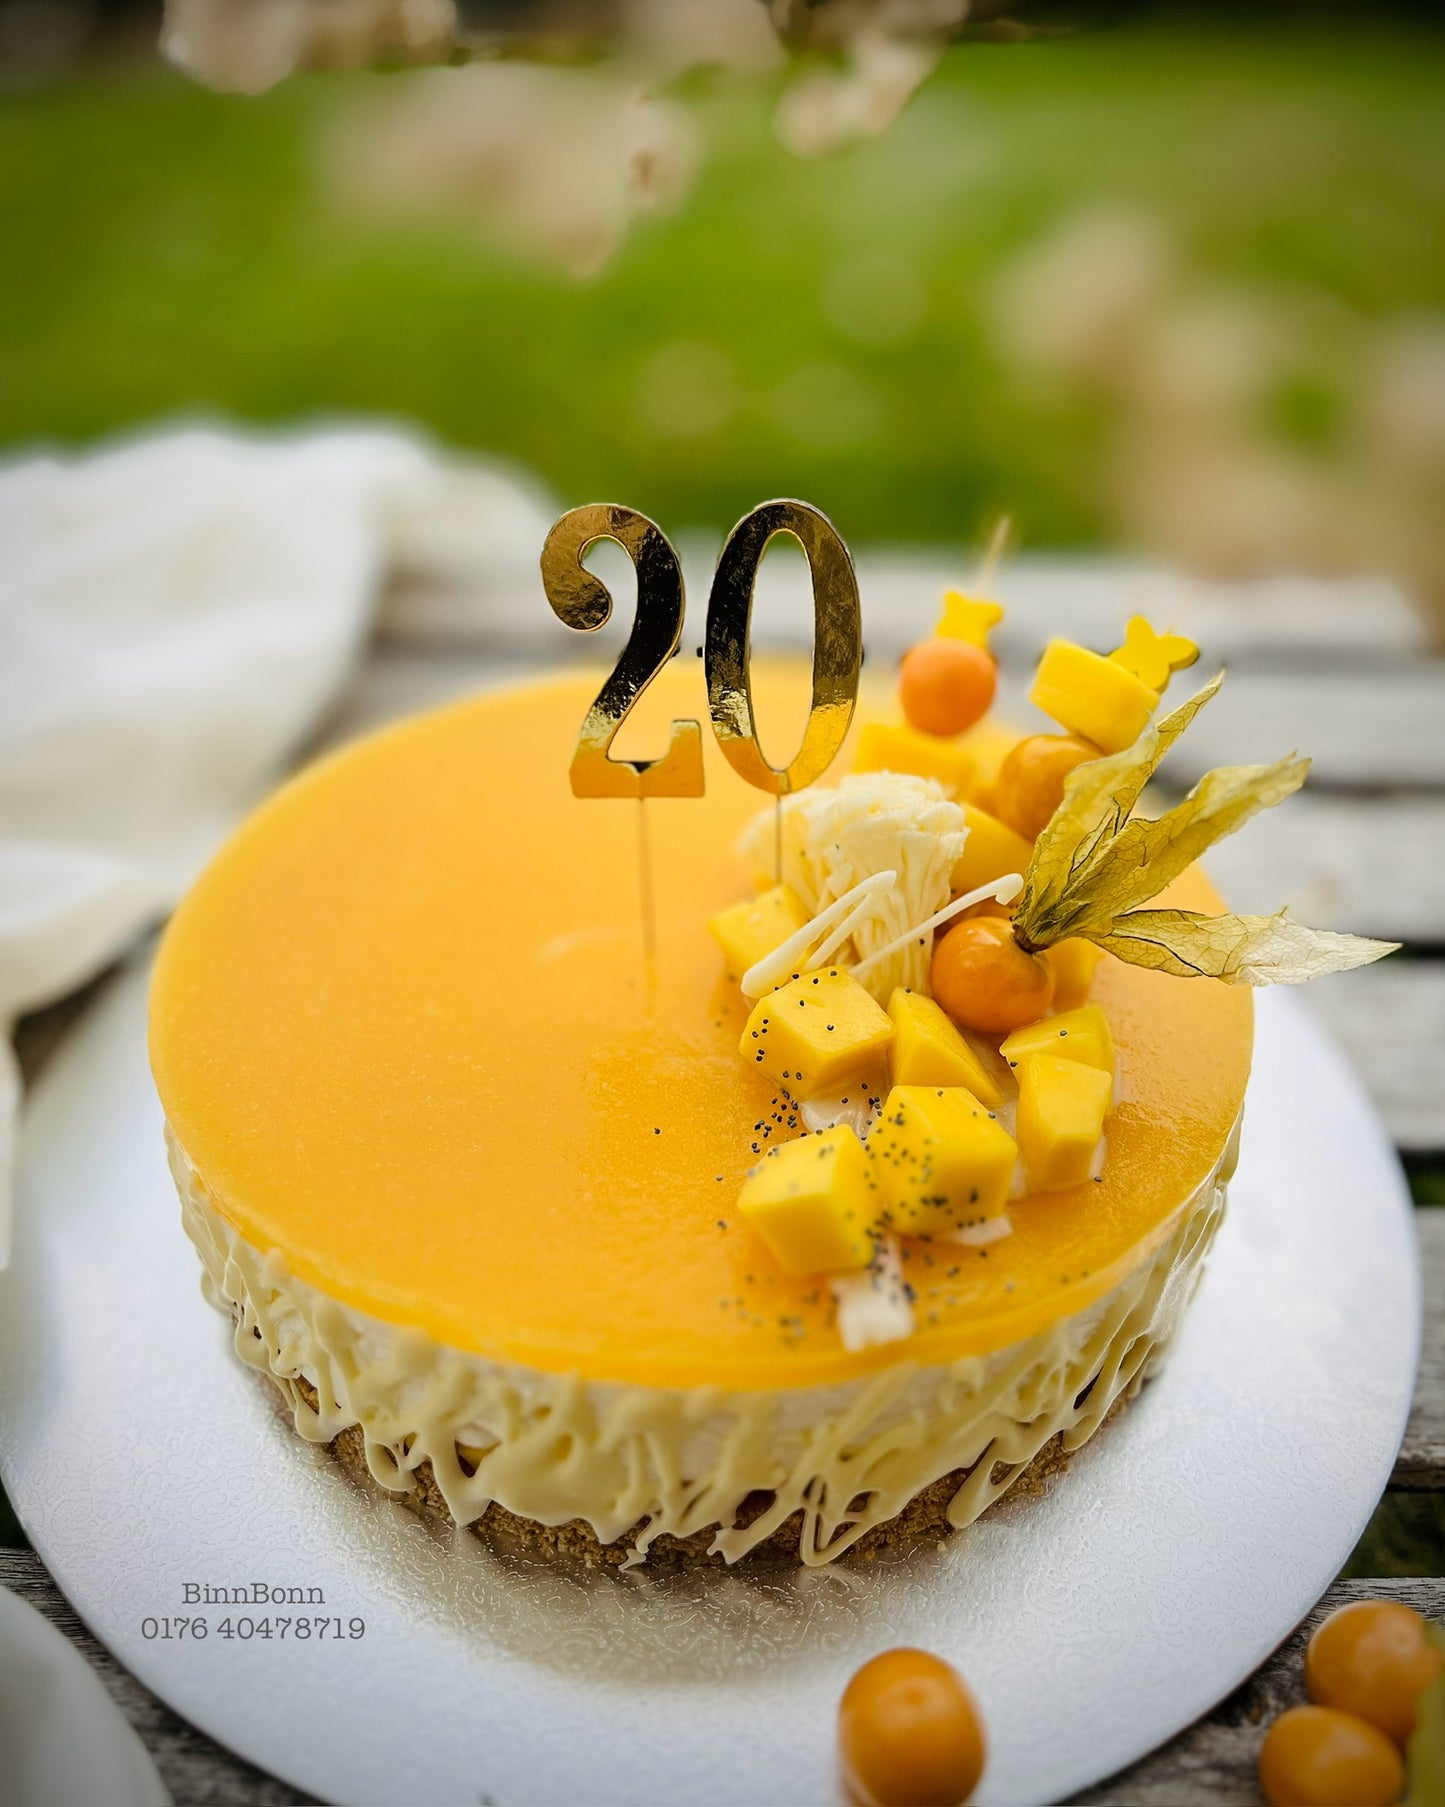 10. Torte "Sunshine" Mango Cheesecake mit frischem Mangopüree 22 cm